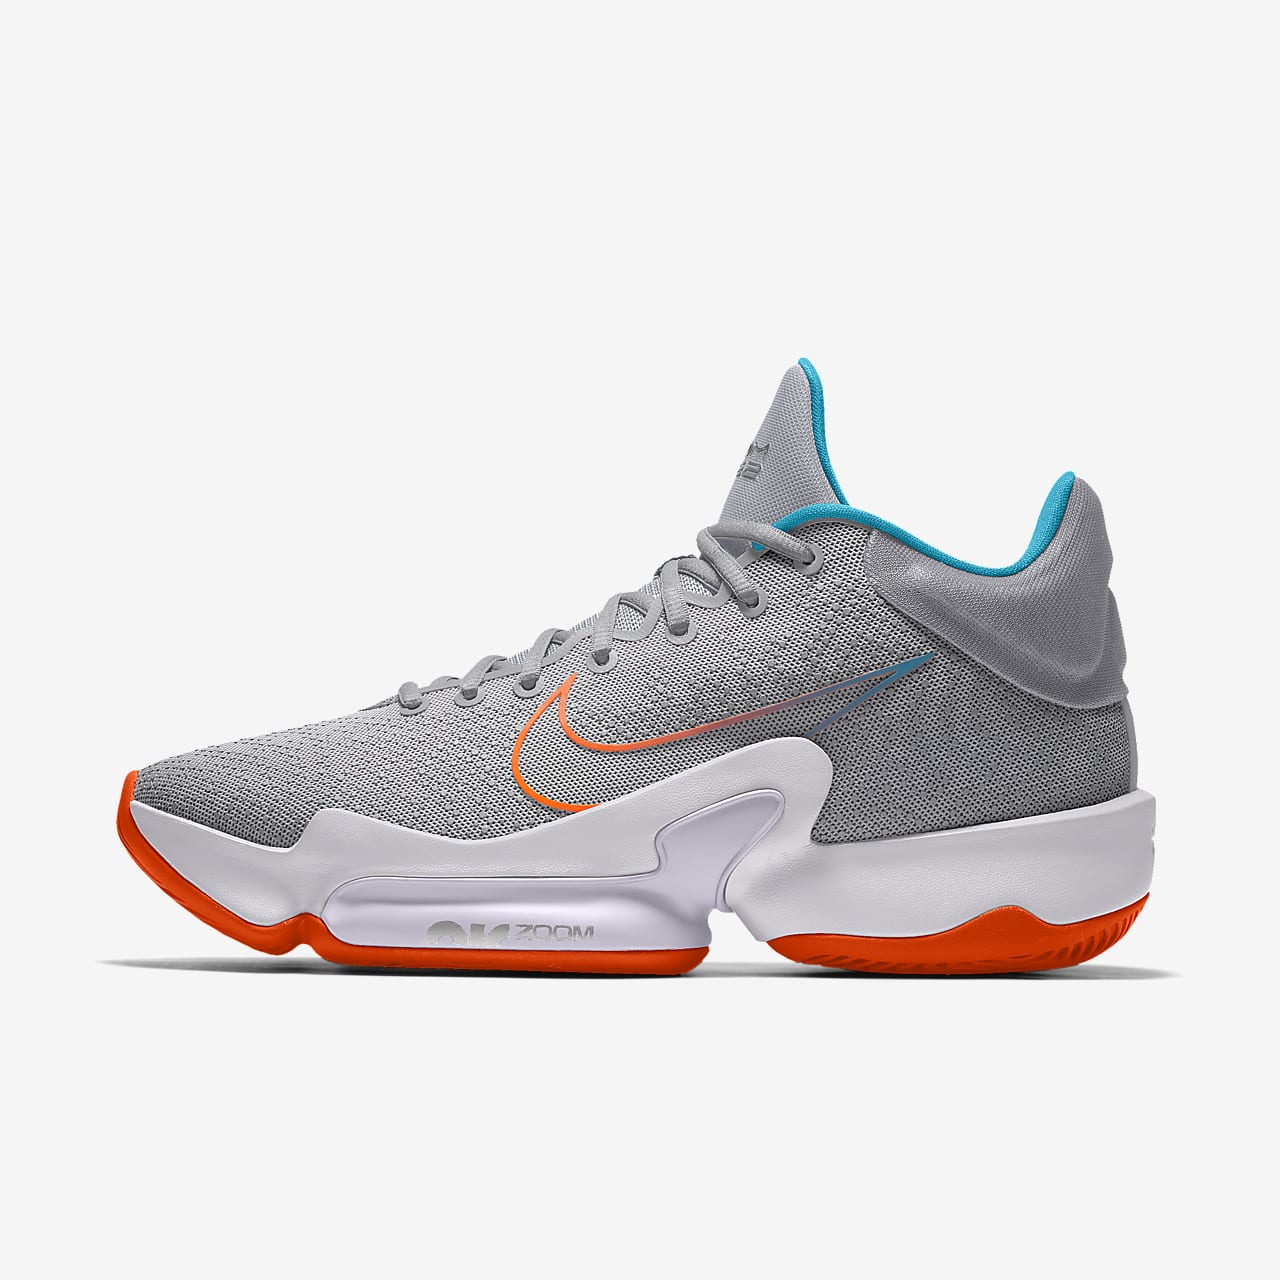 Custom Basketball Shoe. Nike MA